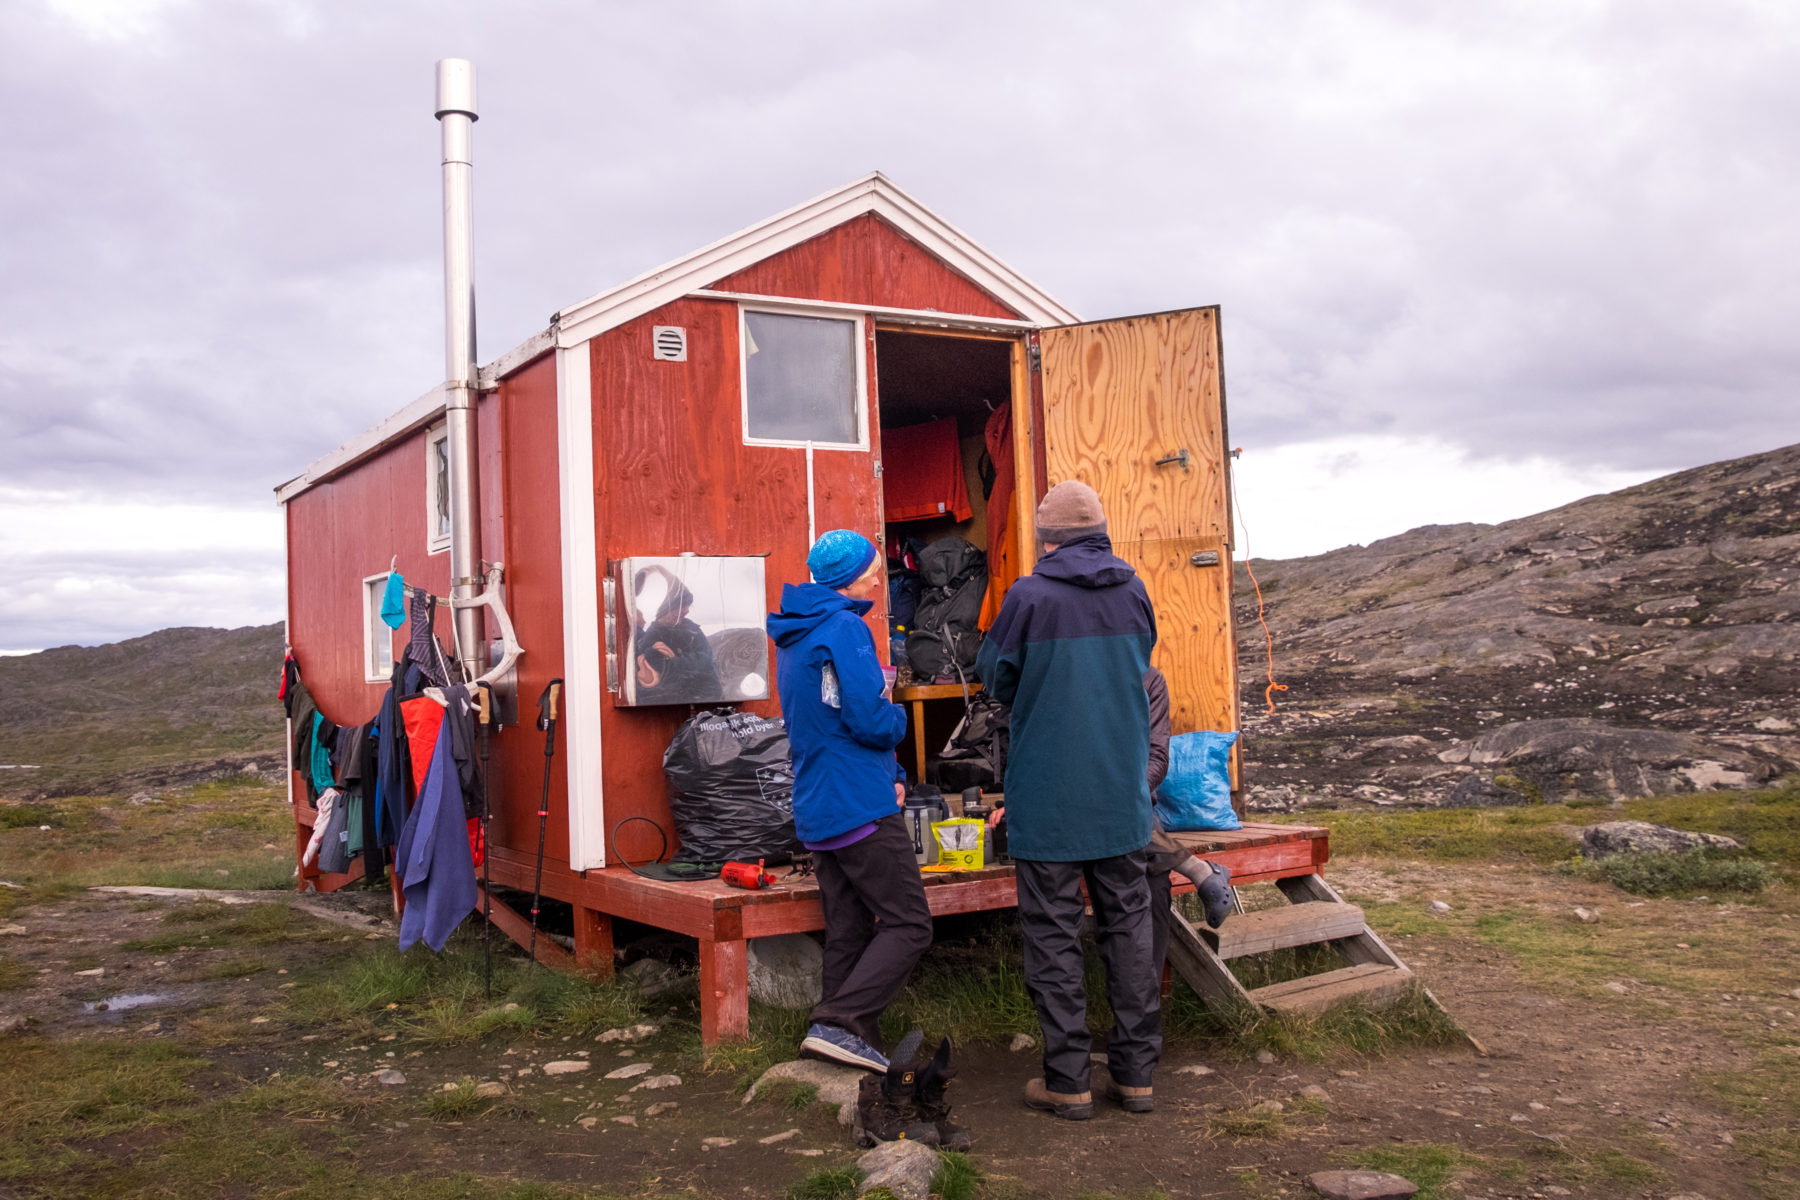 Ikkattooq hut on the Arctic Circle Trail